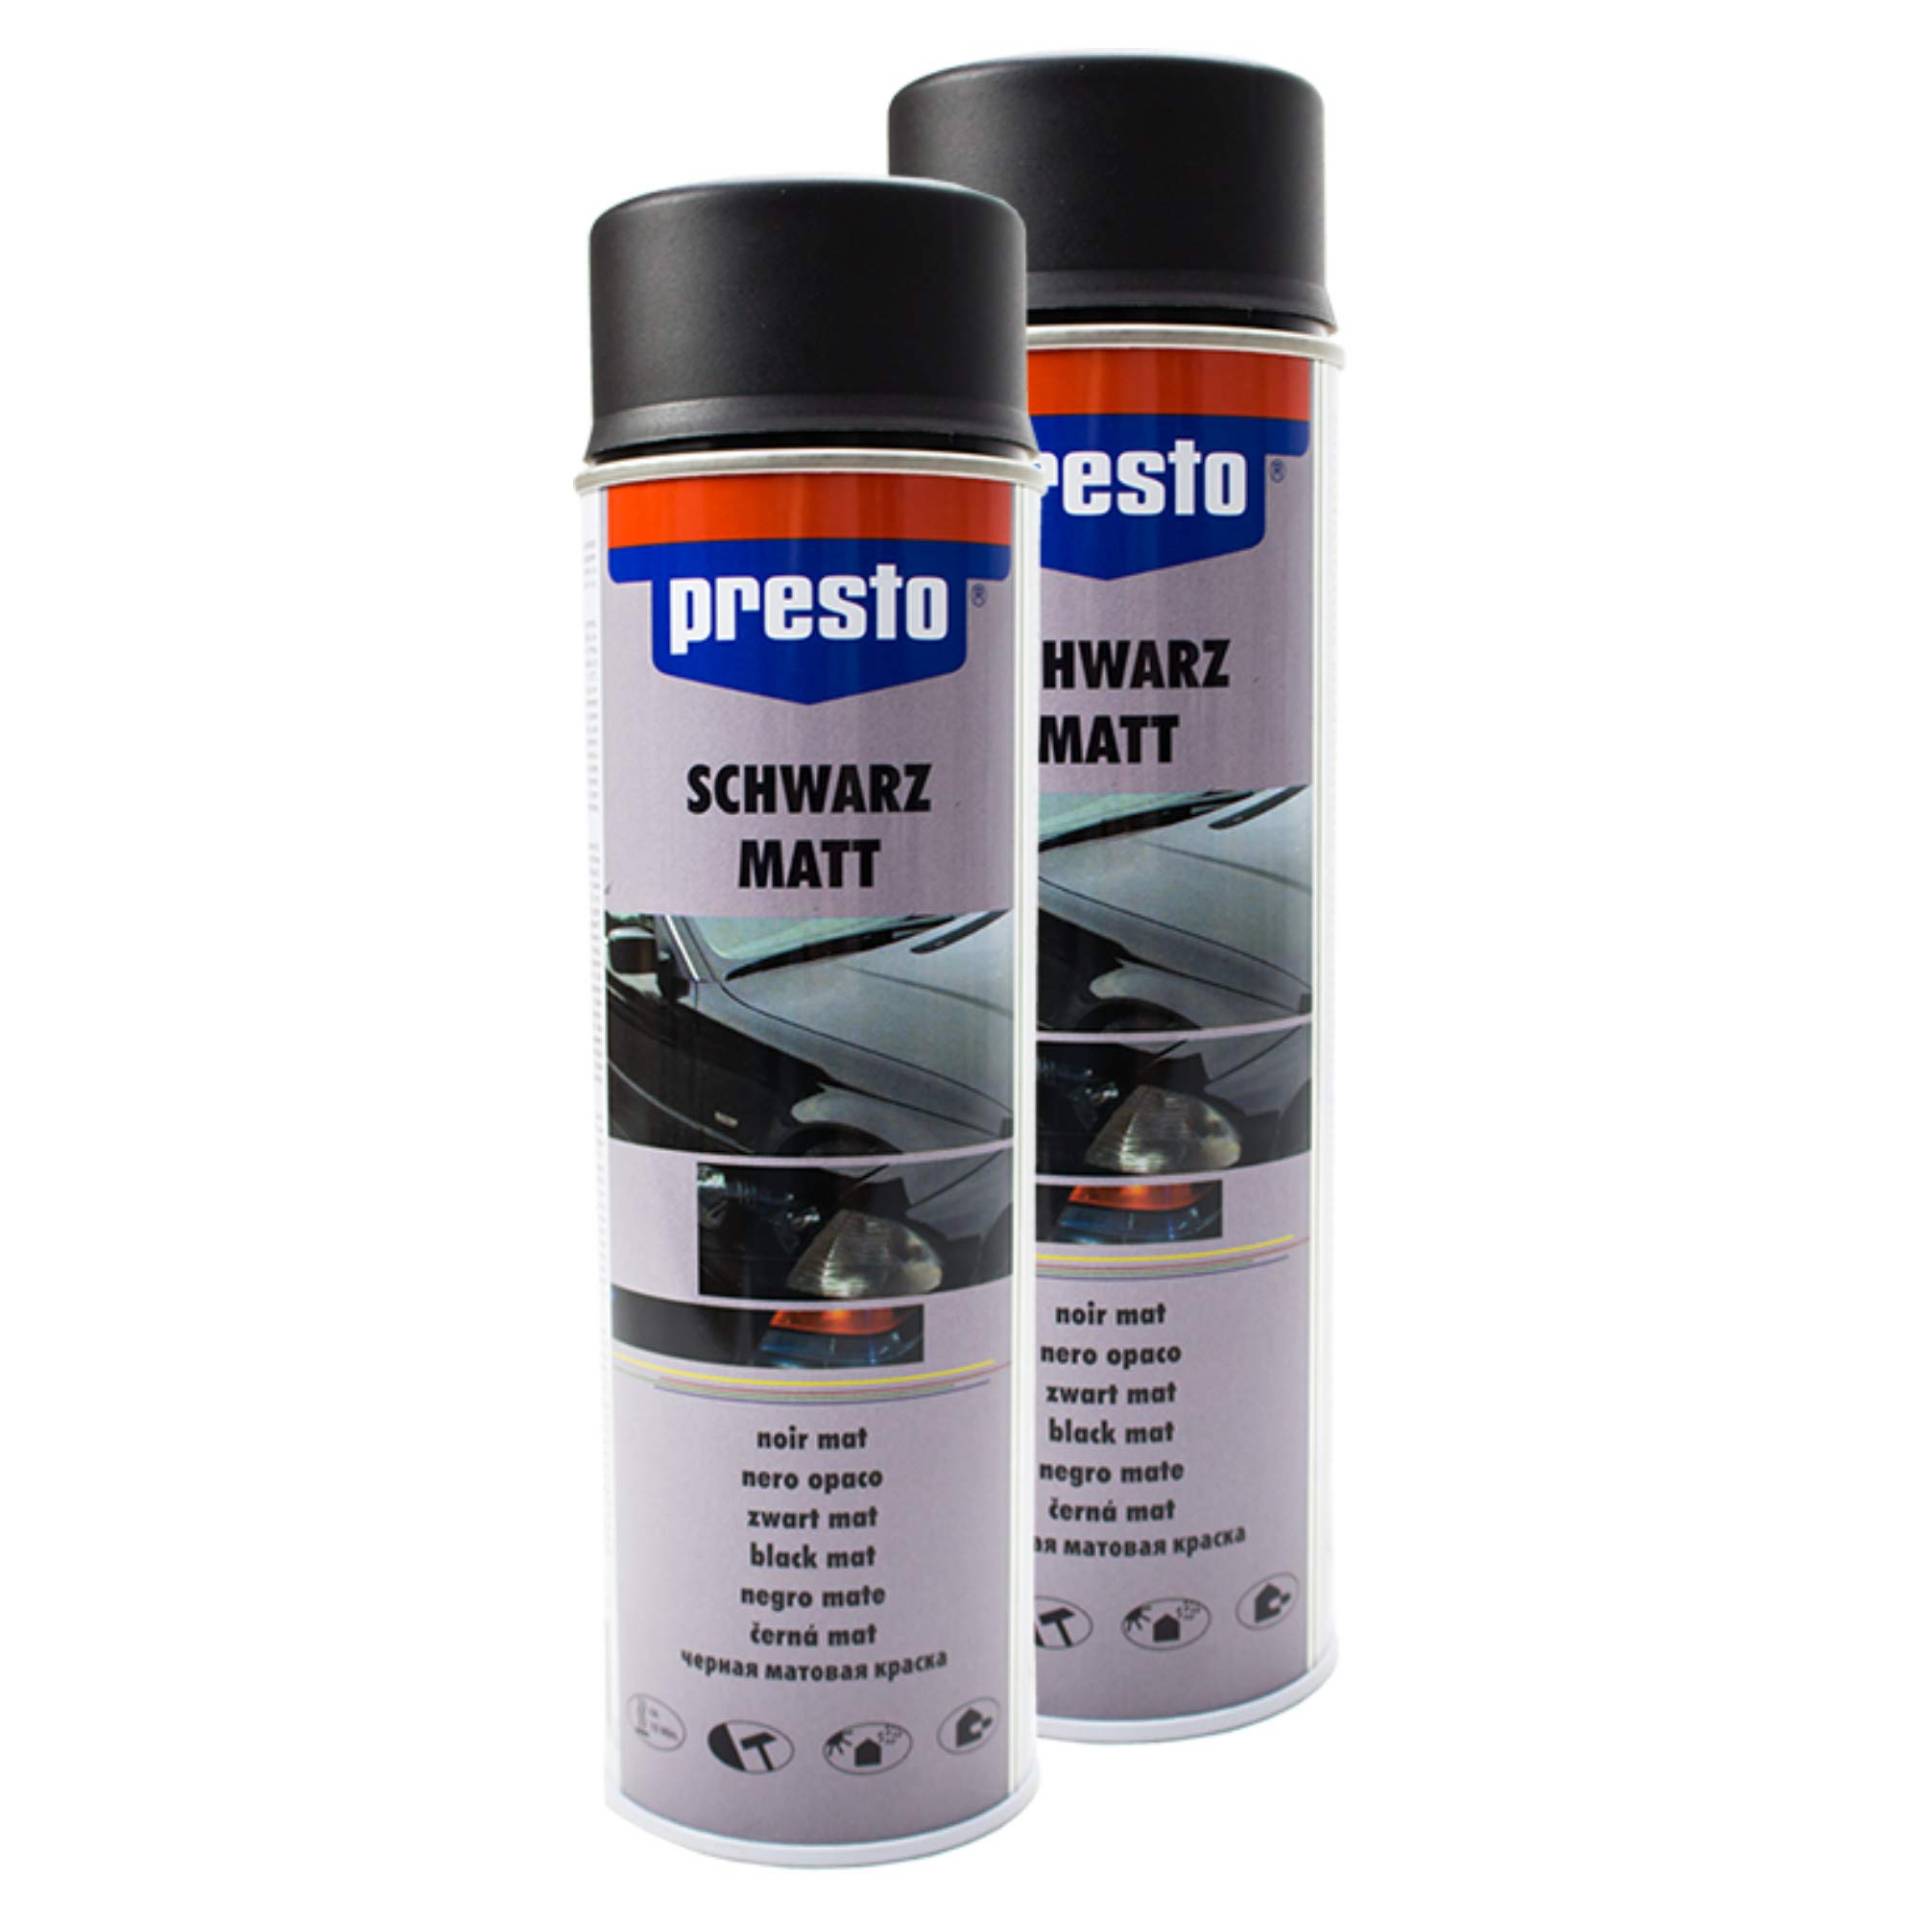 Presto 2X Rallye Spray Kontrast TEILLACKIERUNG Karosserie FELGEN SCHWARZ MATT 40 von Presto